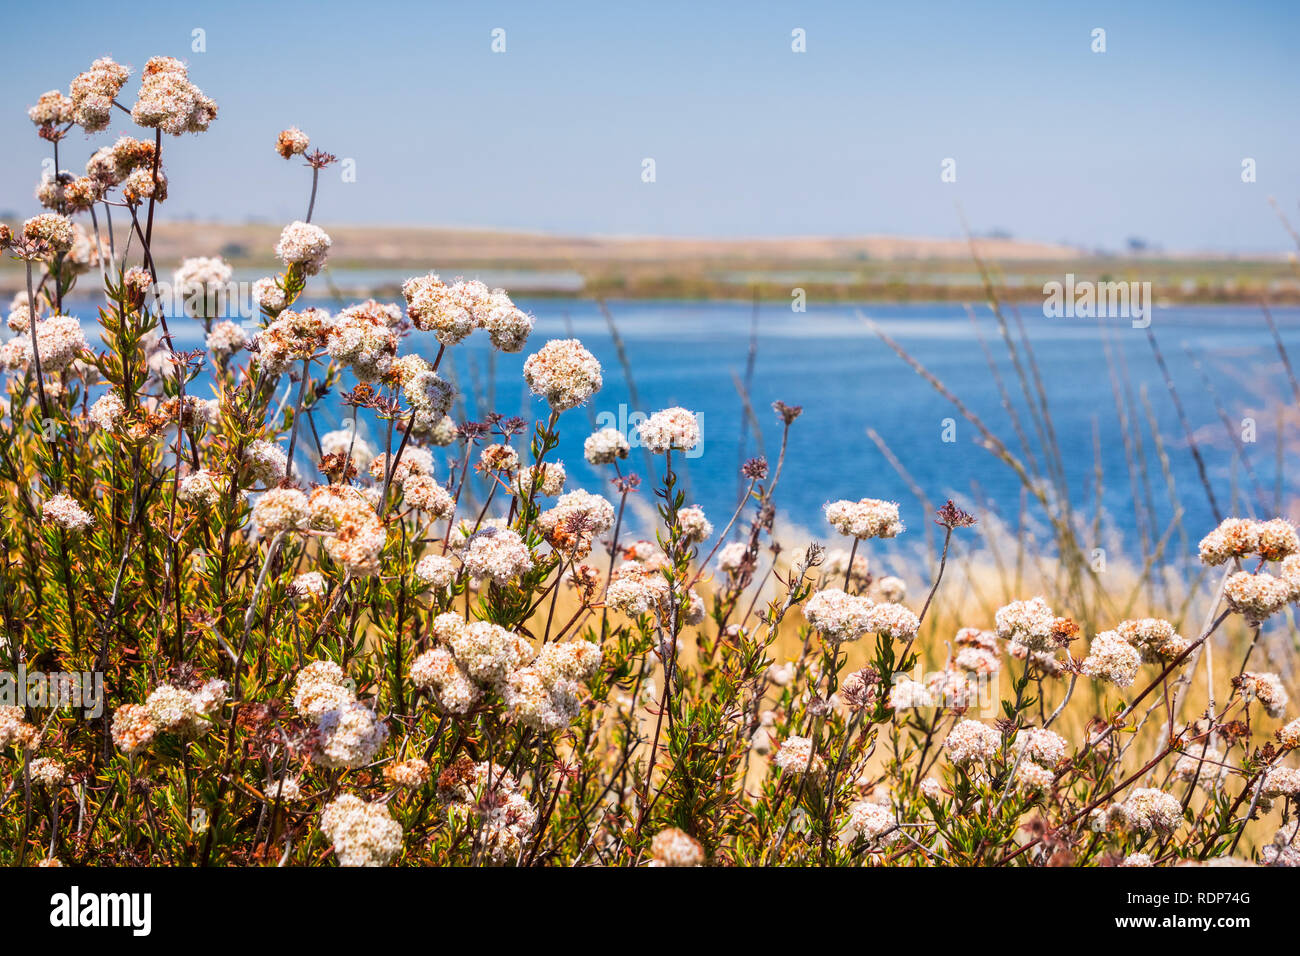 California Buckwheat (Eriogonum fasciculatum) wildflowers, San Francisco bay area, California Stock Photo